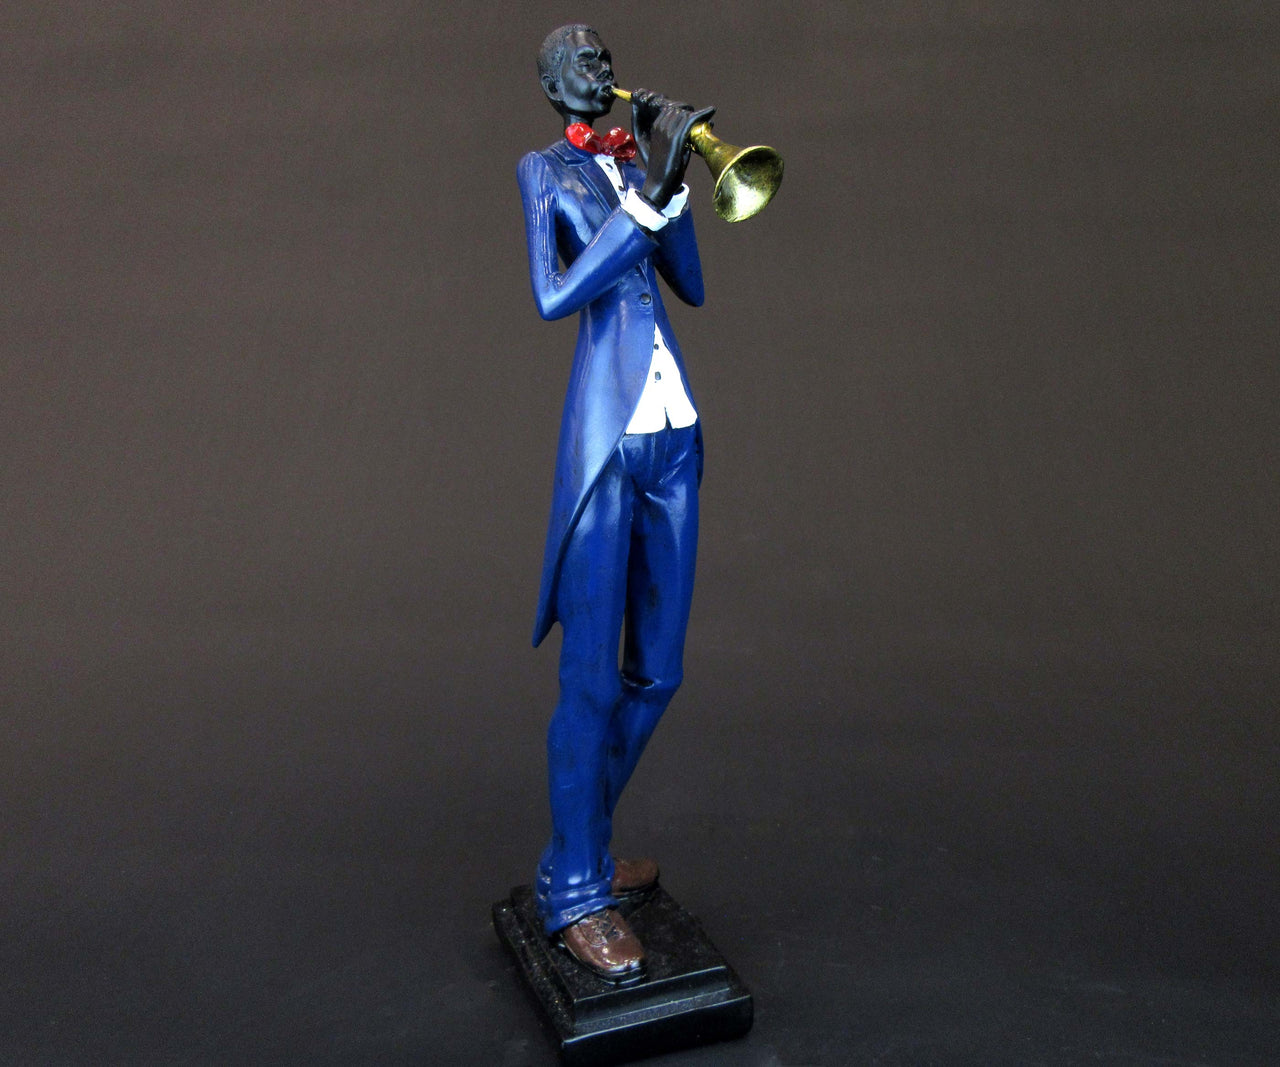 HCHD5571 - Jazz Musician with Trumpet